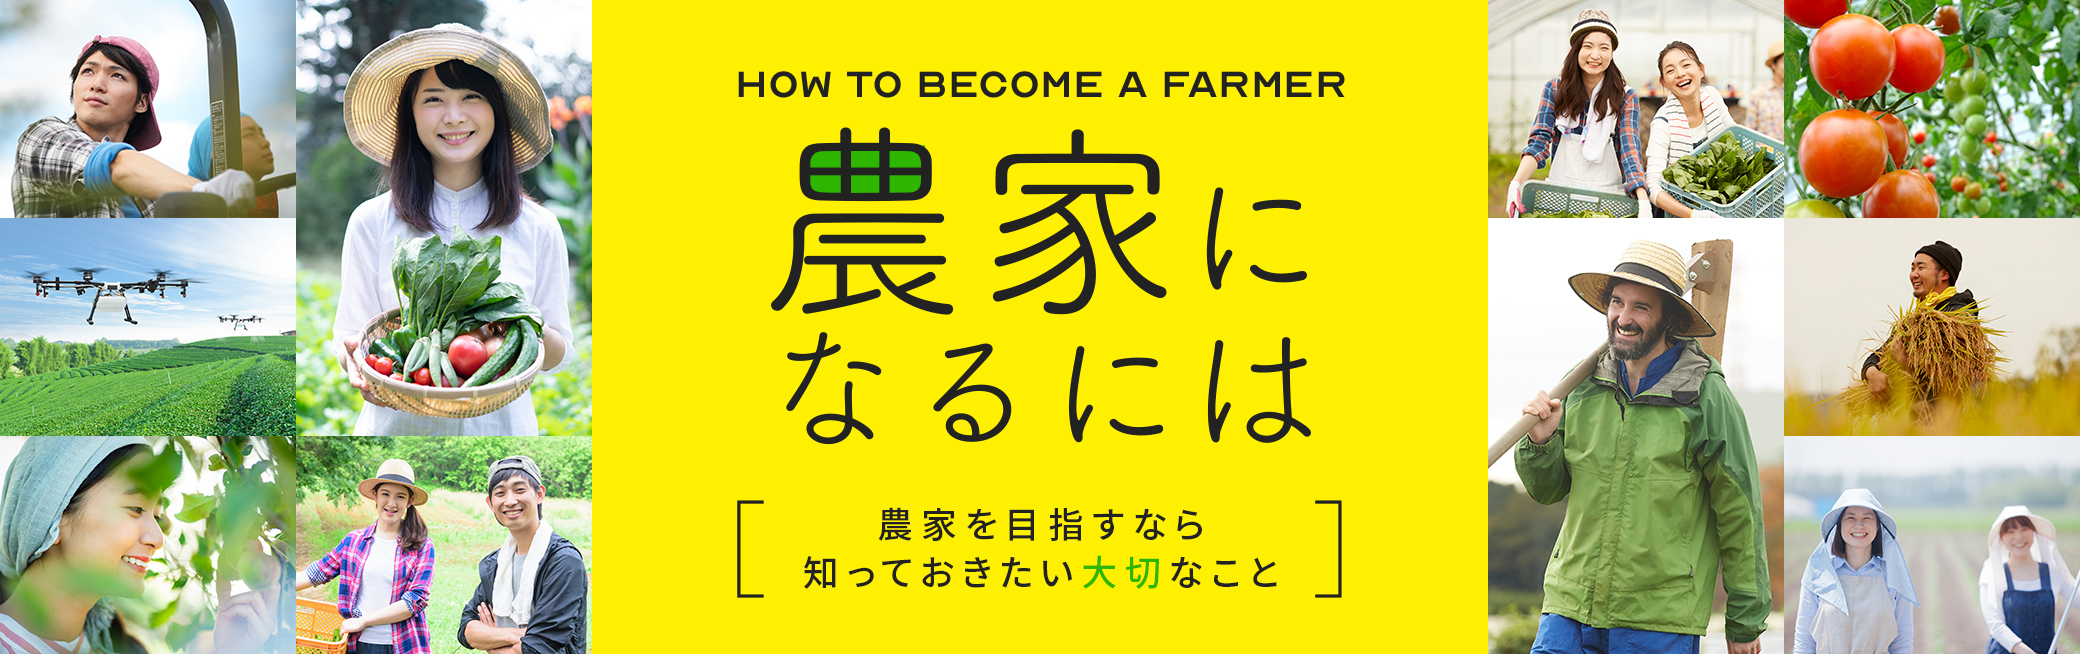 農家になるには 農家になるために必要なノウハウや農業経営のヒントなど、就農にかかわる情報をご紹介します。